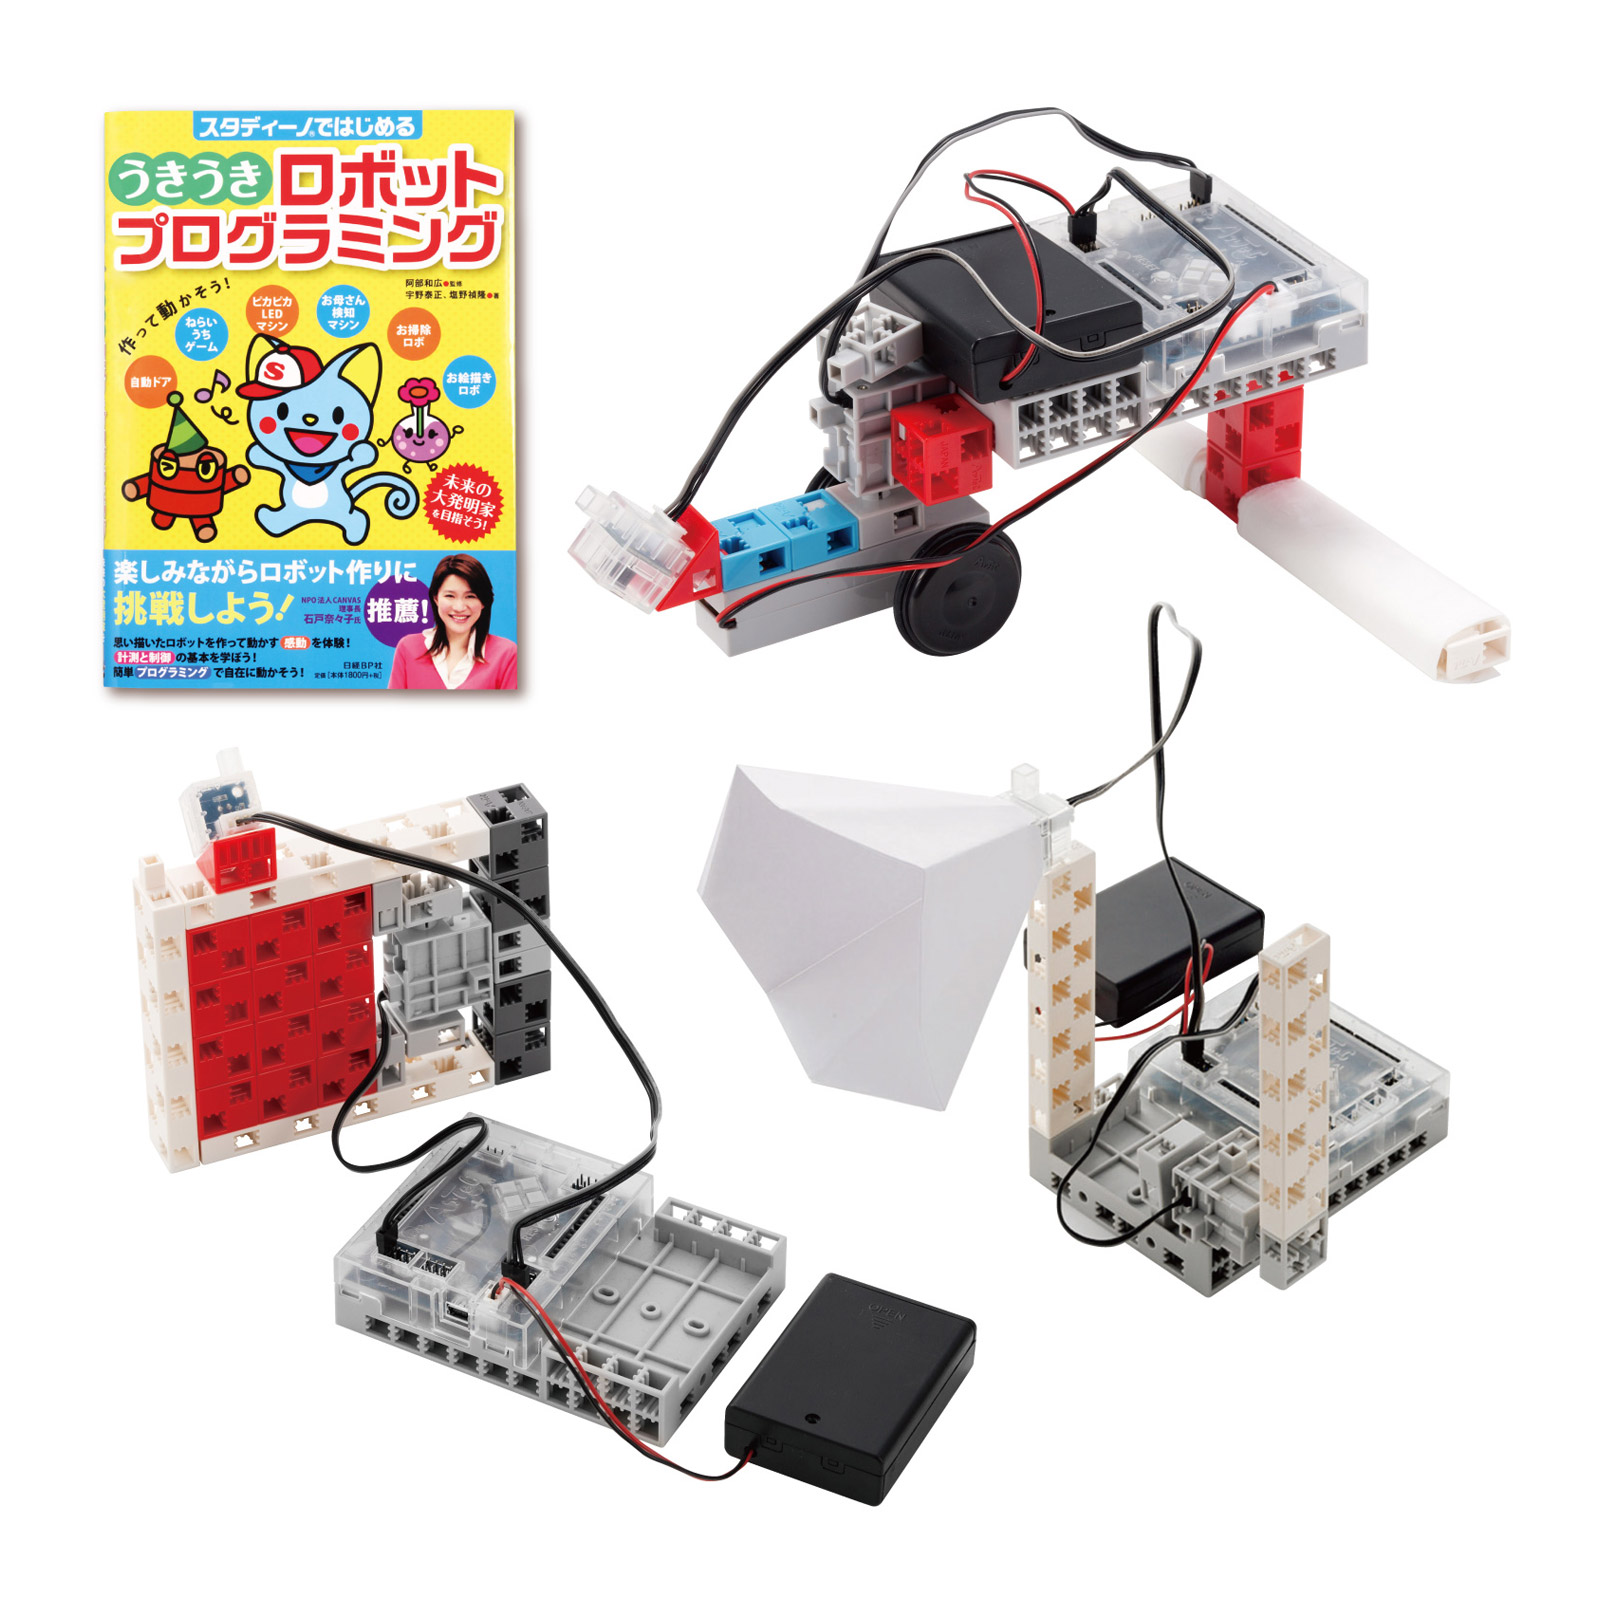 うきうきロボットプログラミングセット 書籍付 子供 小学生 プログラム 図工 科学 知育玩具 おもちゃ サイエンス クリスマスプレゼント